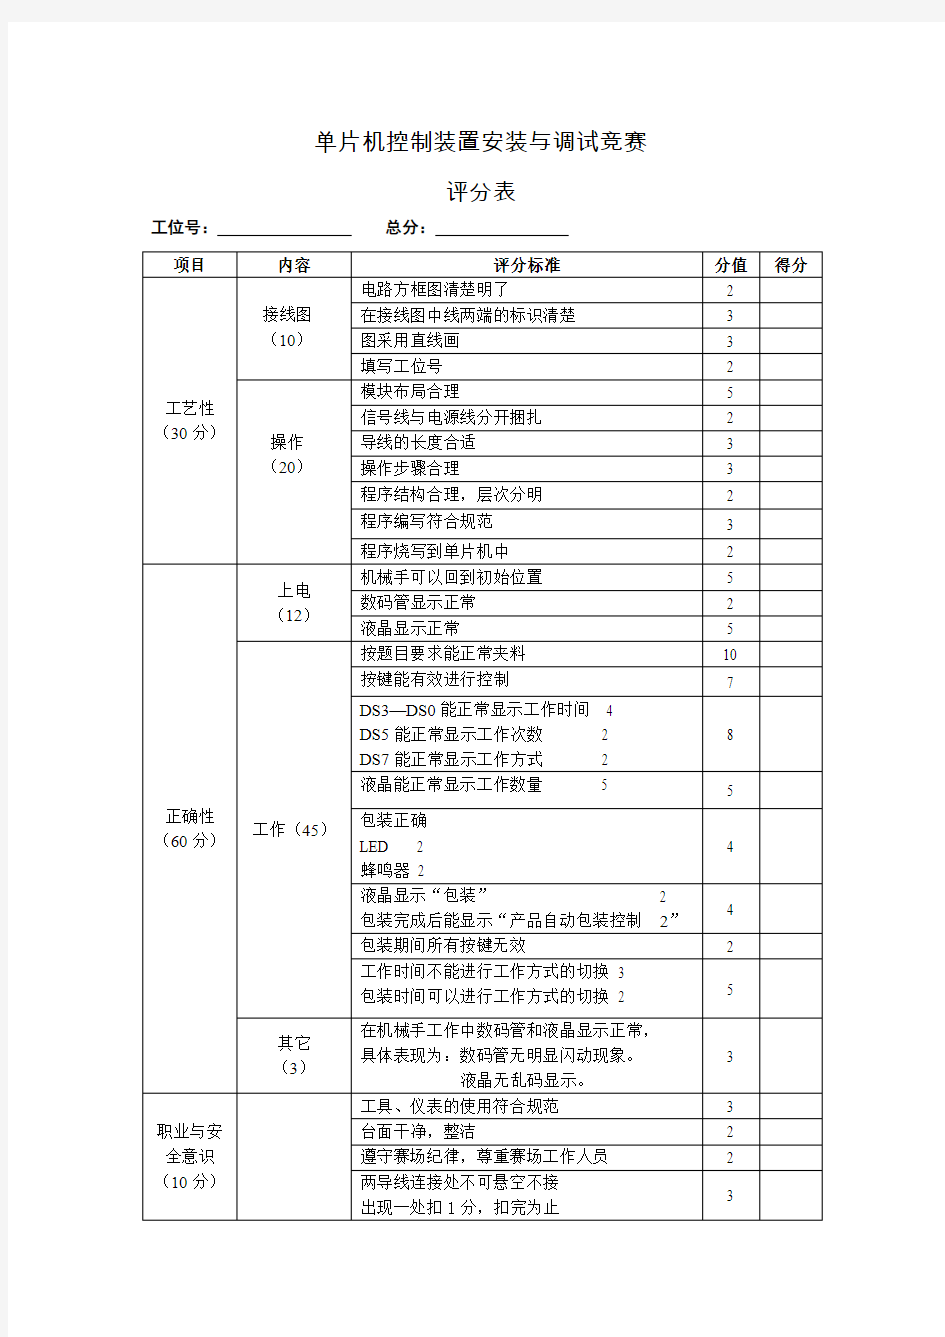 2013单片机技能大赛试题(评分表)